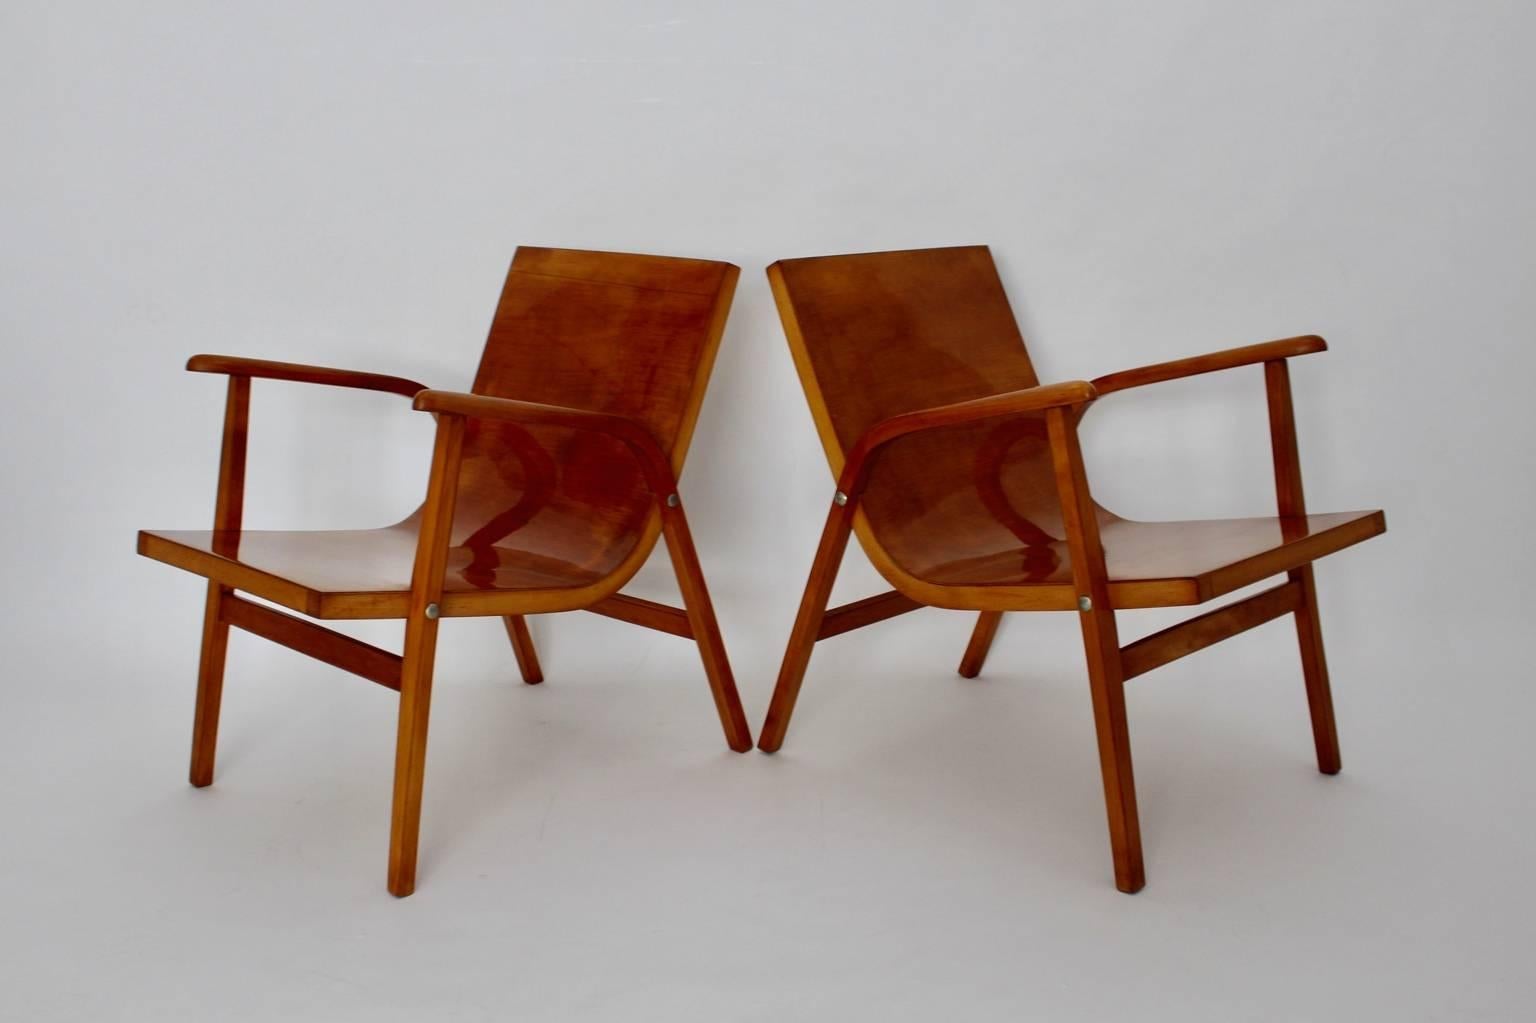 Mid Century Modern Vintage Paar Sessel aus Buche entworfen von Roland Rainer, Wien 1952 für das Cafe Ritter in Wien, und hergestellt von Emil & Alfred Pollak, Wien.

Die schlichten und schicken Loungesessel sind aus massivem, gebogenem Buchenholz